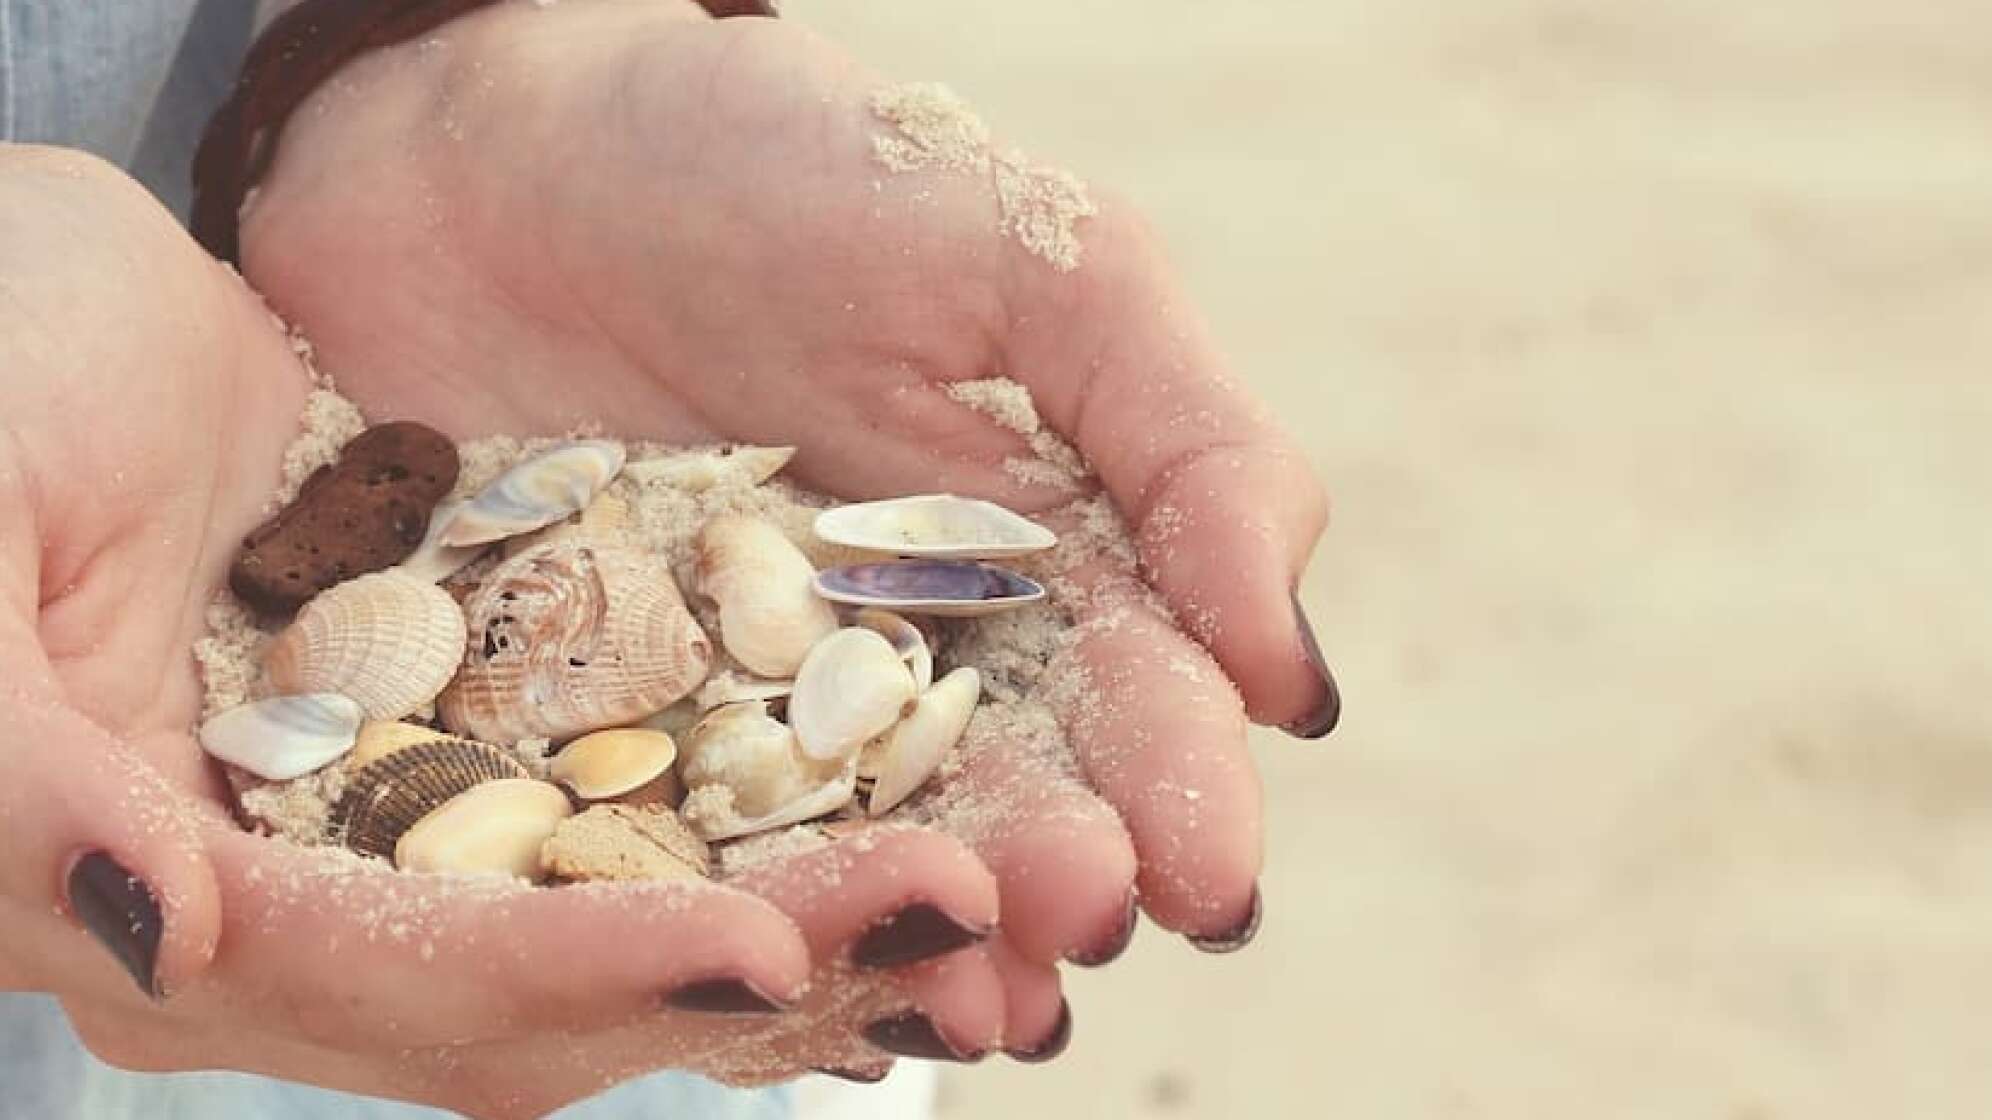 Muscheln in der Hand am Strand